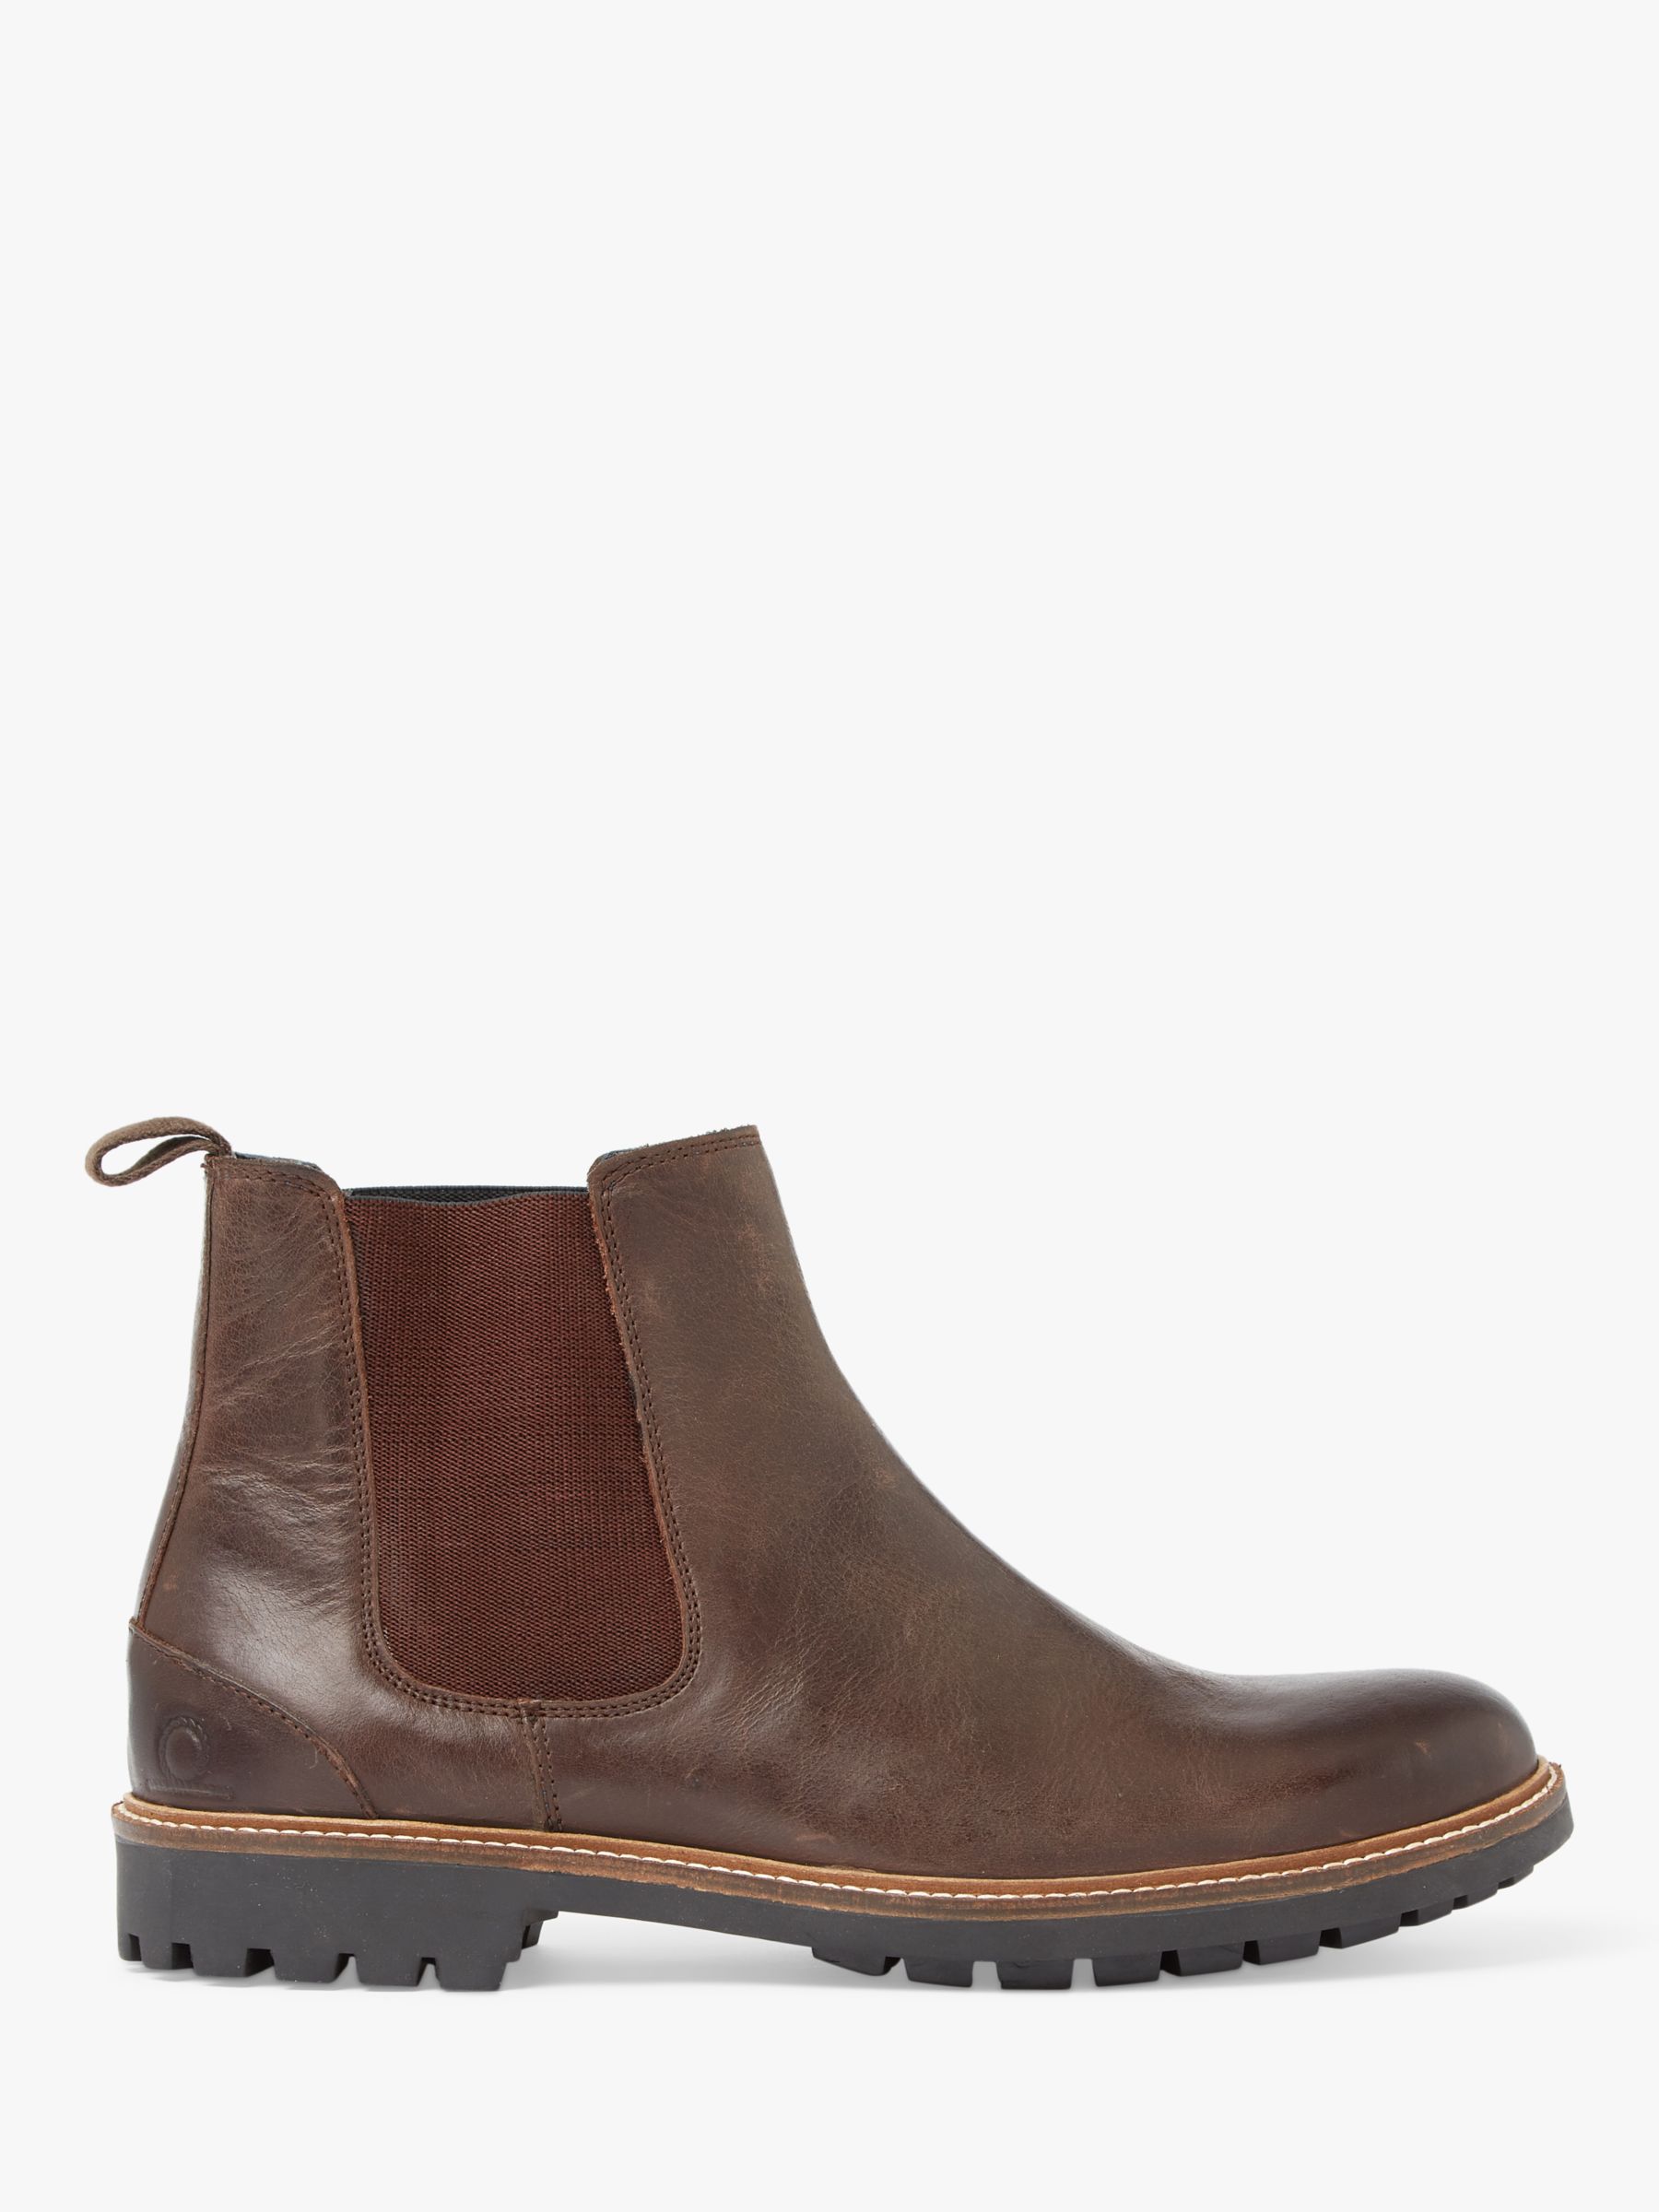 Кожаные ботинки челси Chirk Chatham, коричневый кожаные ботинки чукка buckland chatham тан